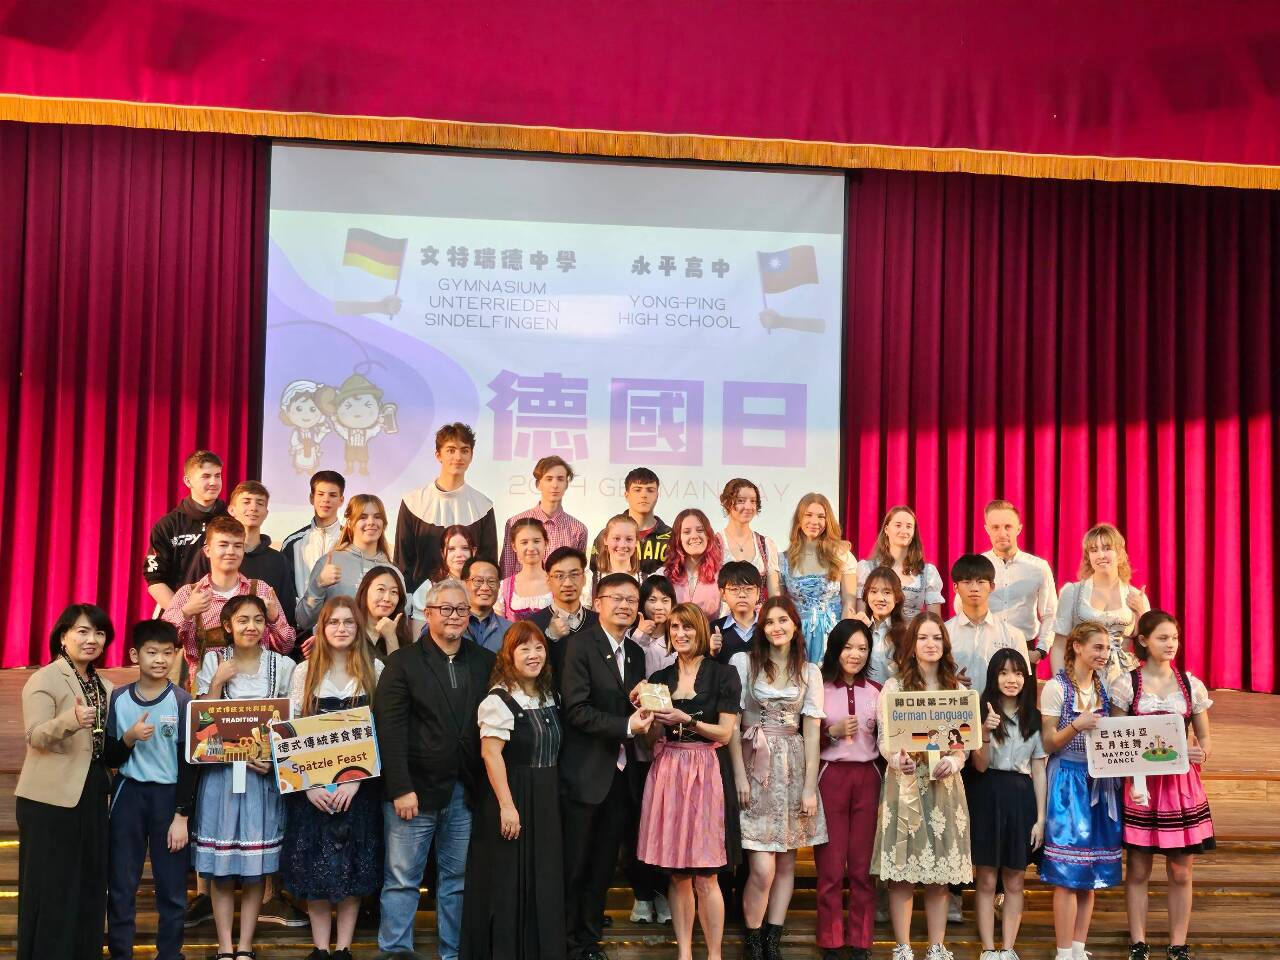 姊妹校回訪台灣 永平高中舉辦「德國日」